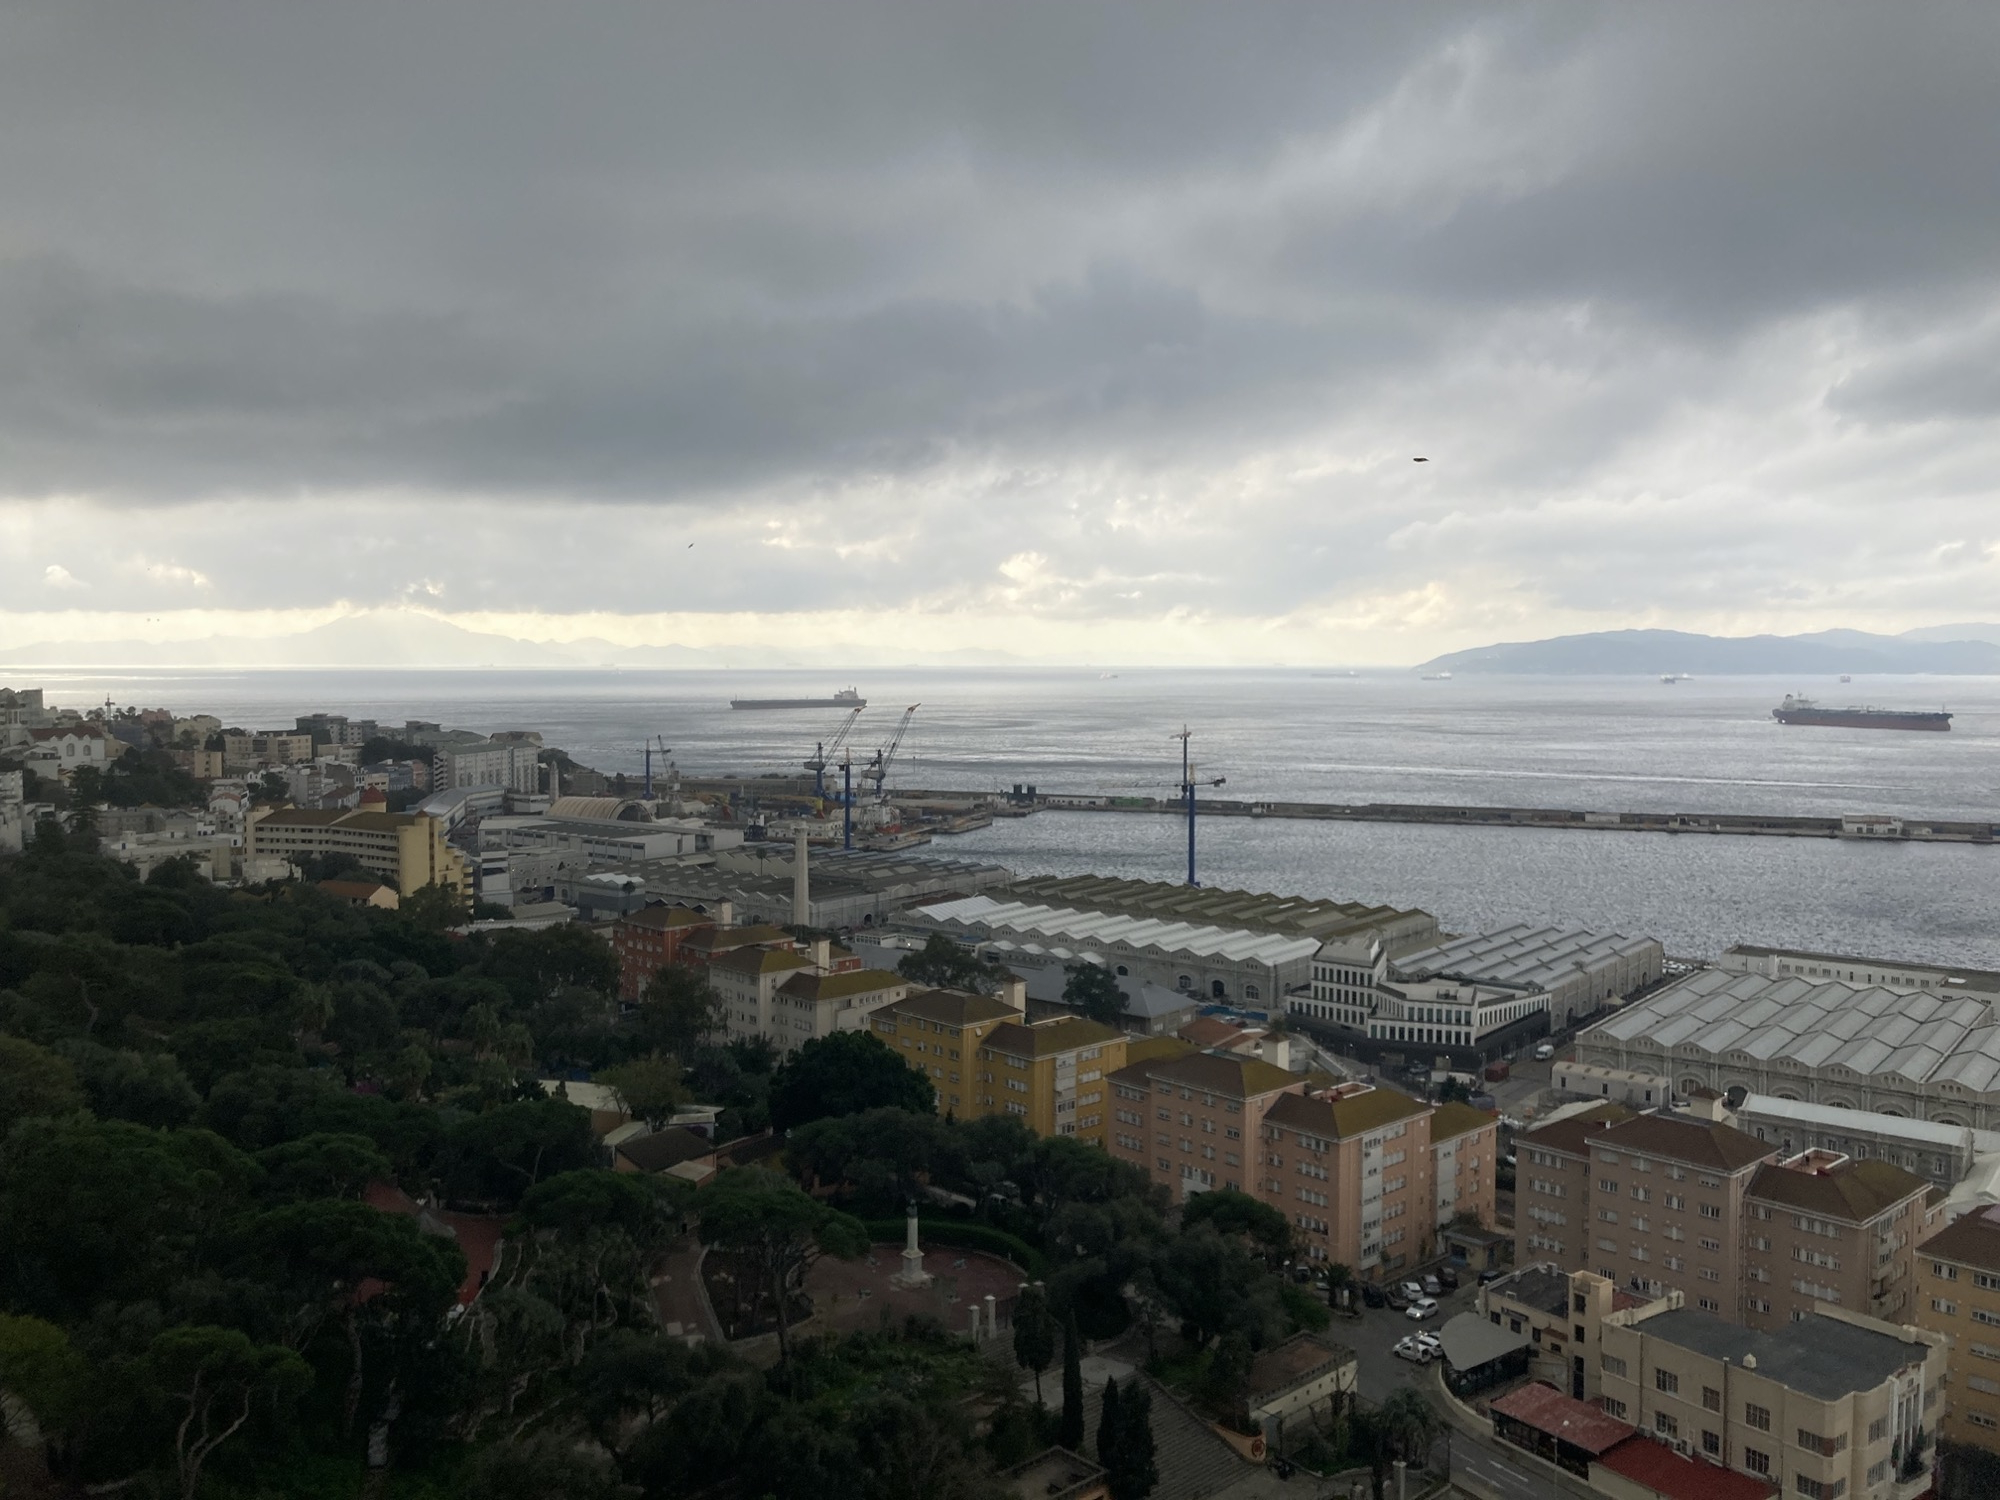 Ausblick aus der Kabine der Seilbahn, im Vordergrund sind ein Park, Wohnhäuser und Industriegebäude am Hafen von Gibraltar zu sehen, zwei Frachtschiffe kreuzen die Bucht, am Horizont ist rechts die südlichste Spitze von Spanien südlich von Algeciras zu sehen, weiter links im Hintergrund weiter entfernte Berge, dies ist bereits Afrika, über all dem schwebt ein düsterer grauer Wolkenhimmel, der nur am Horizont etwas aufreißt